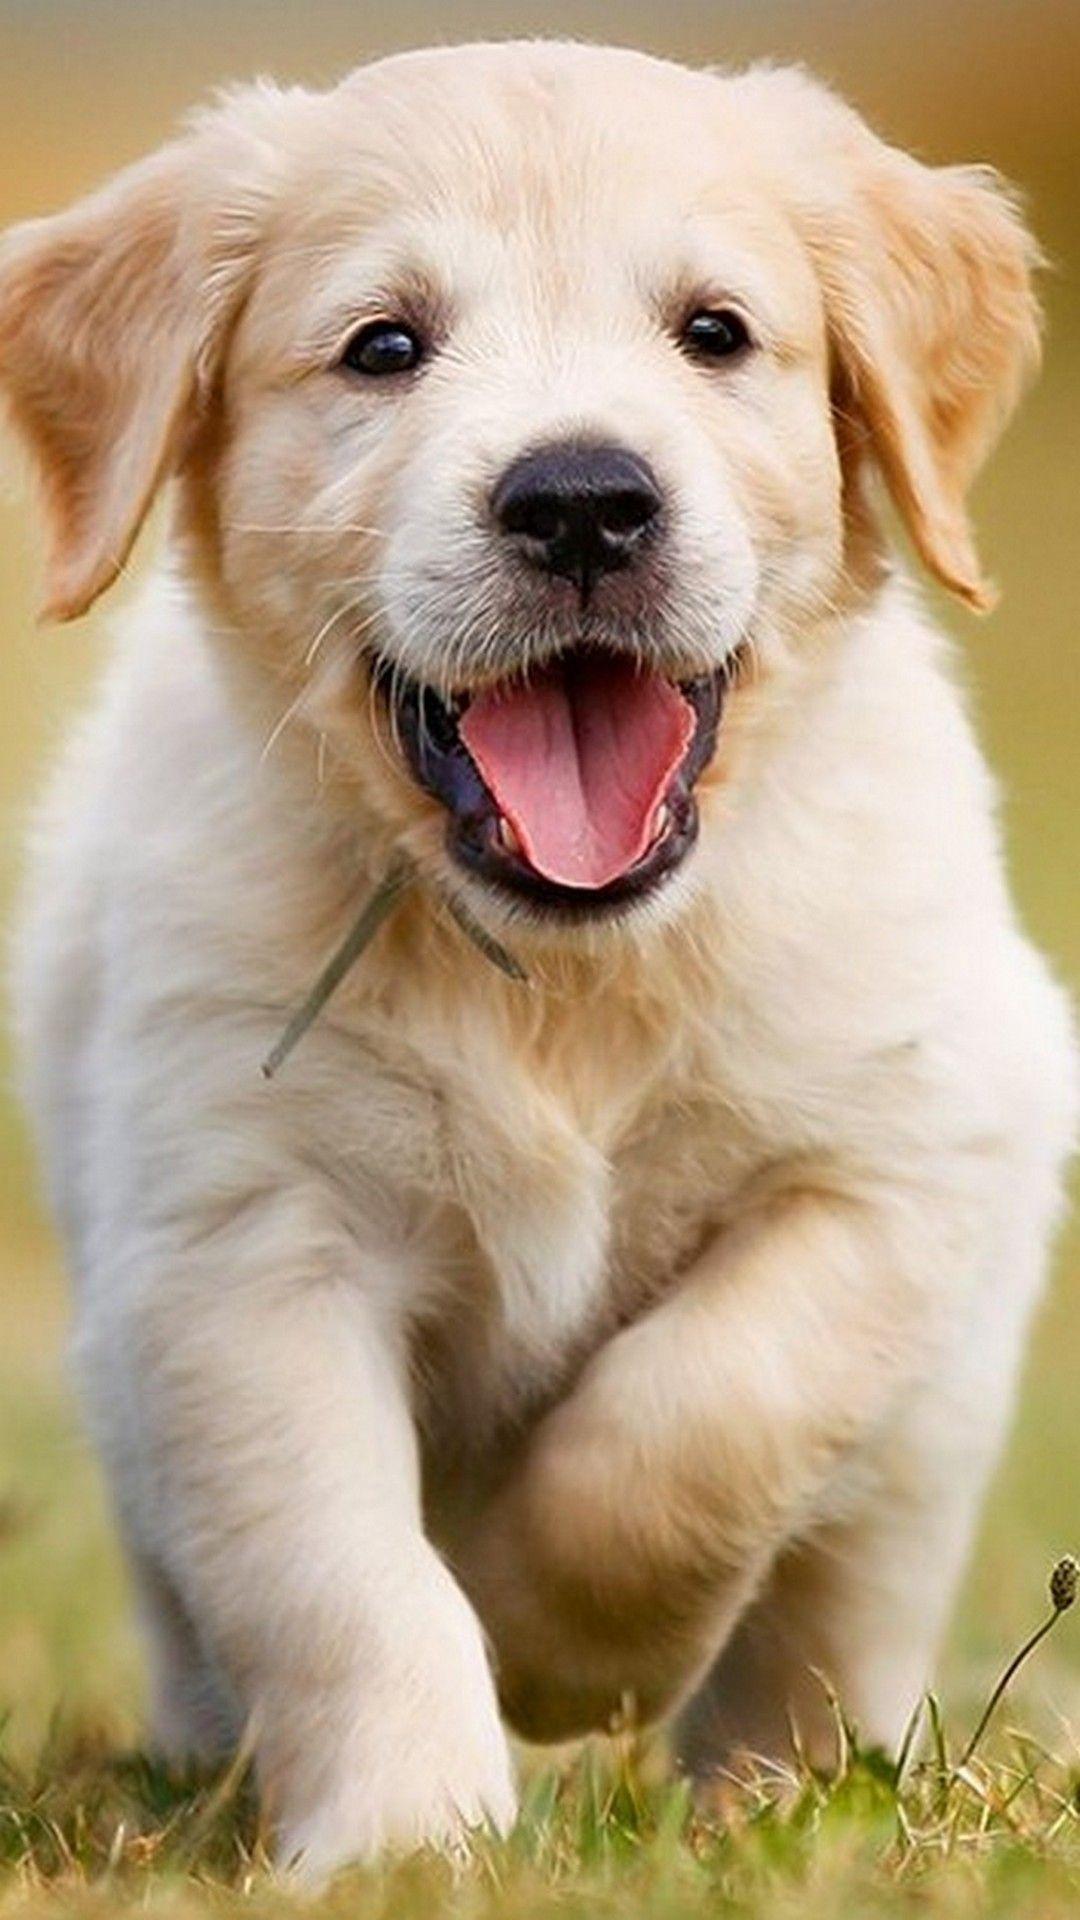 Puppies Cellphone Wallpaper. Best HD Wallpaper. Cute dog wallpaper, Cute puppy wallpaper, Cute dogs